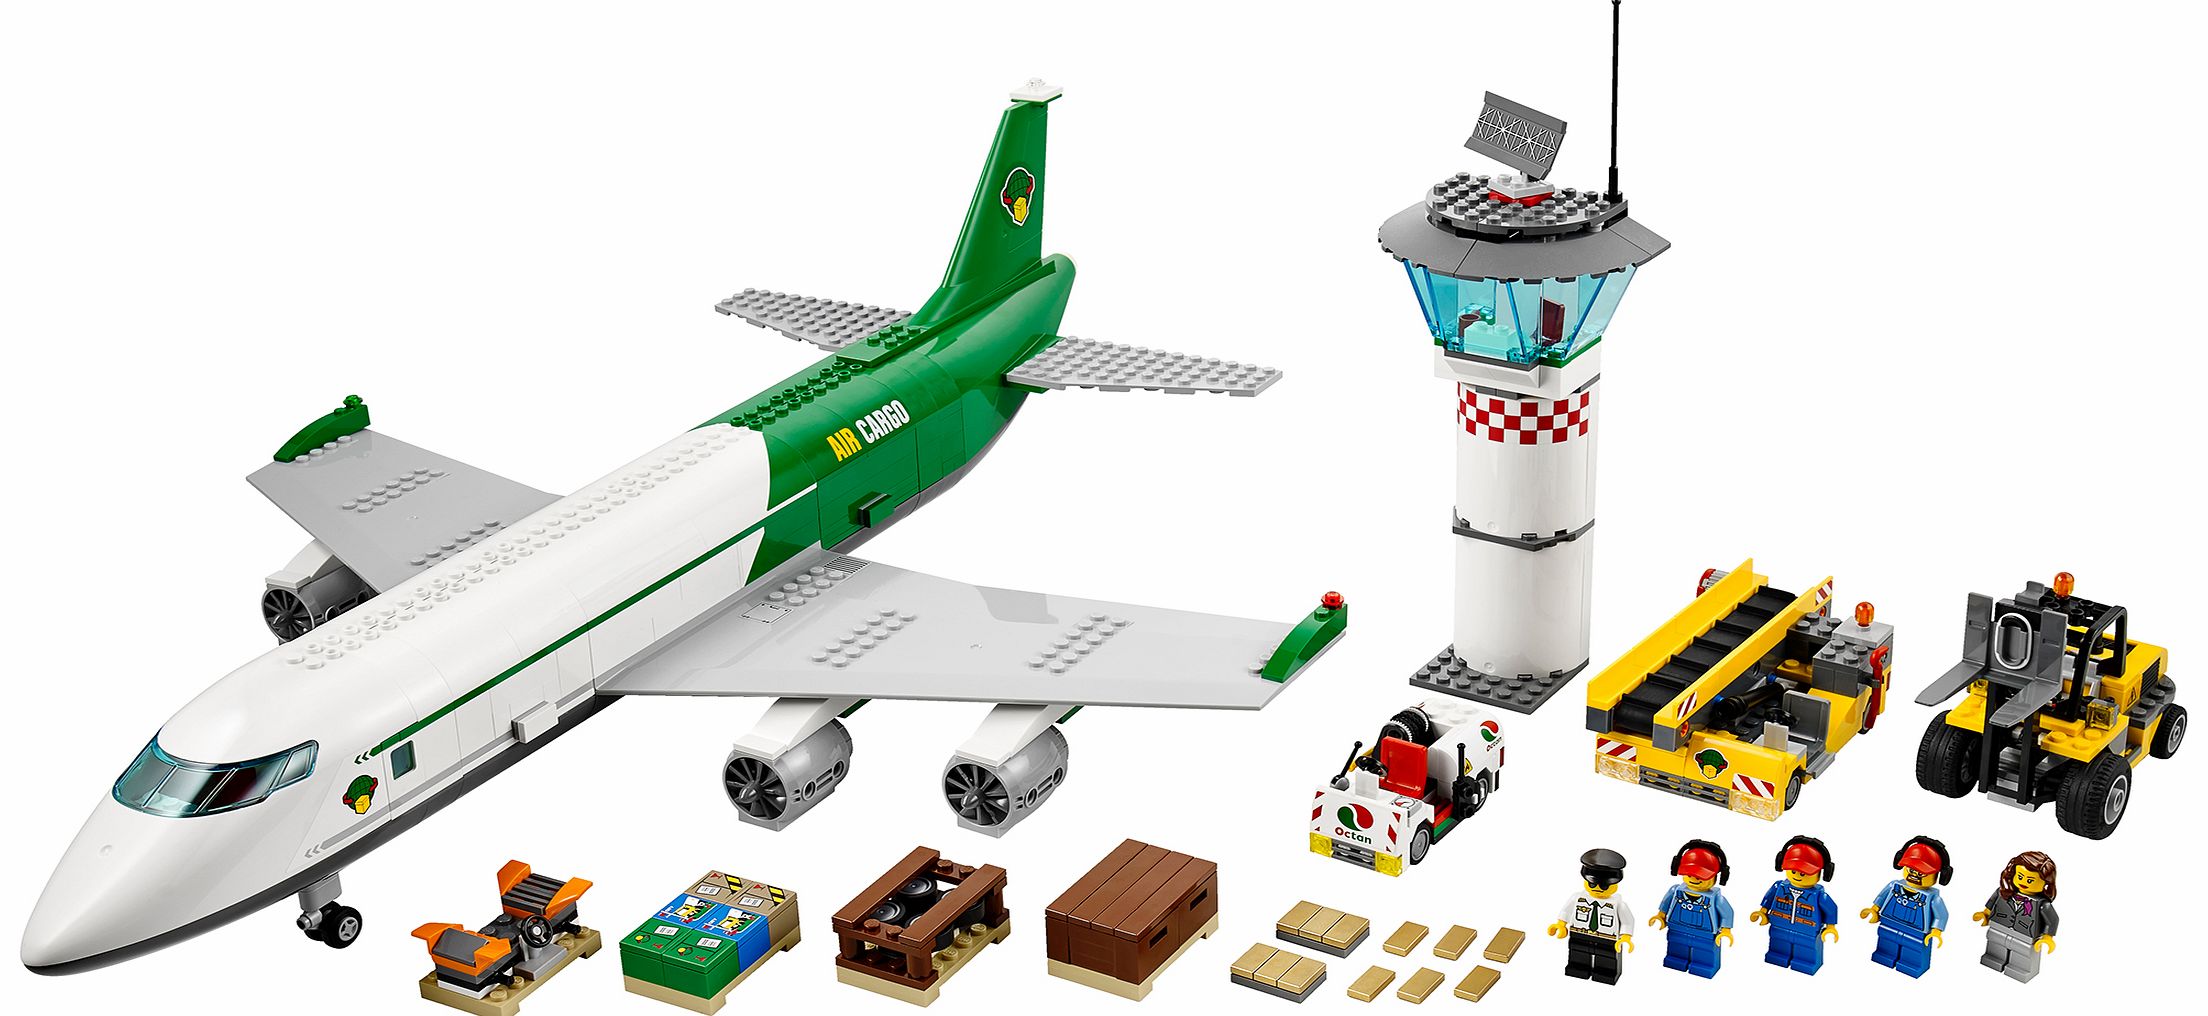 Lego City Cargo Terminal 60022